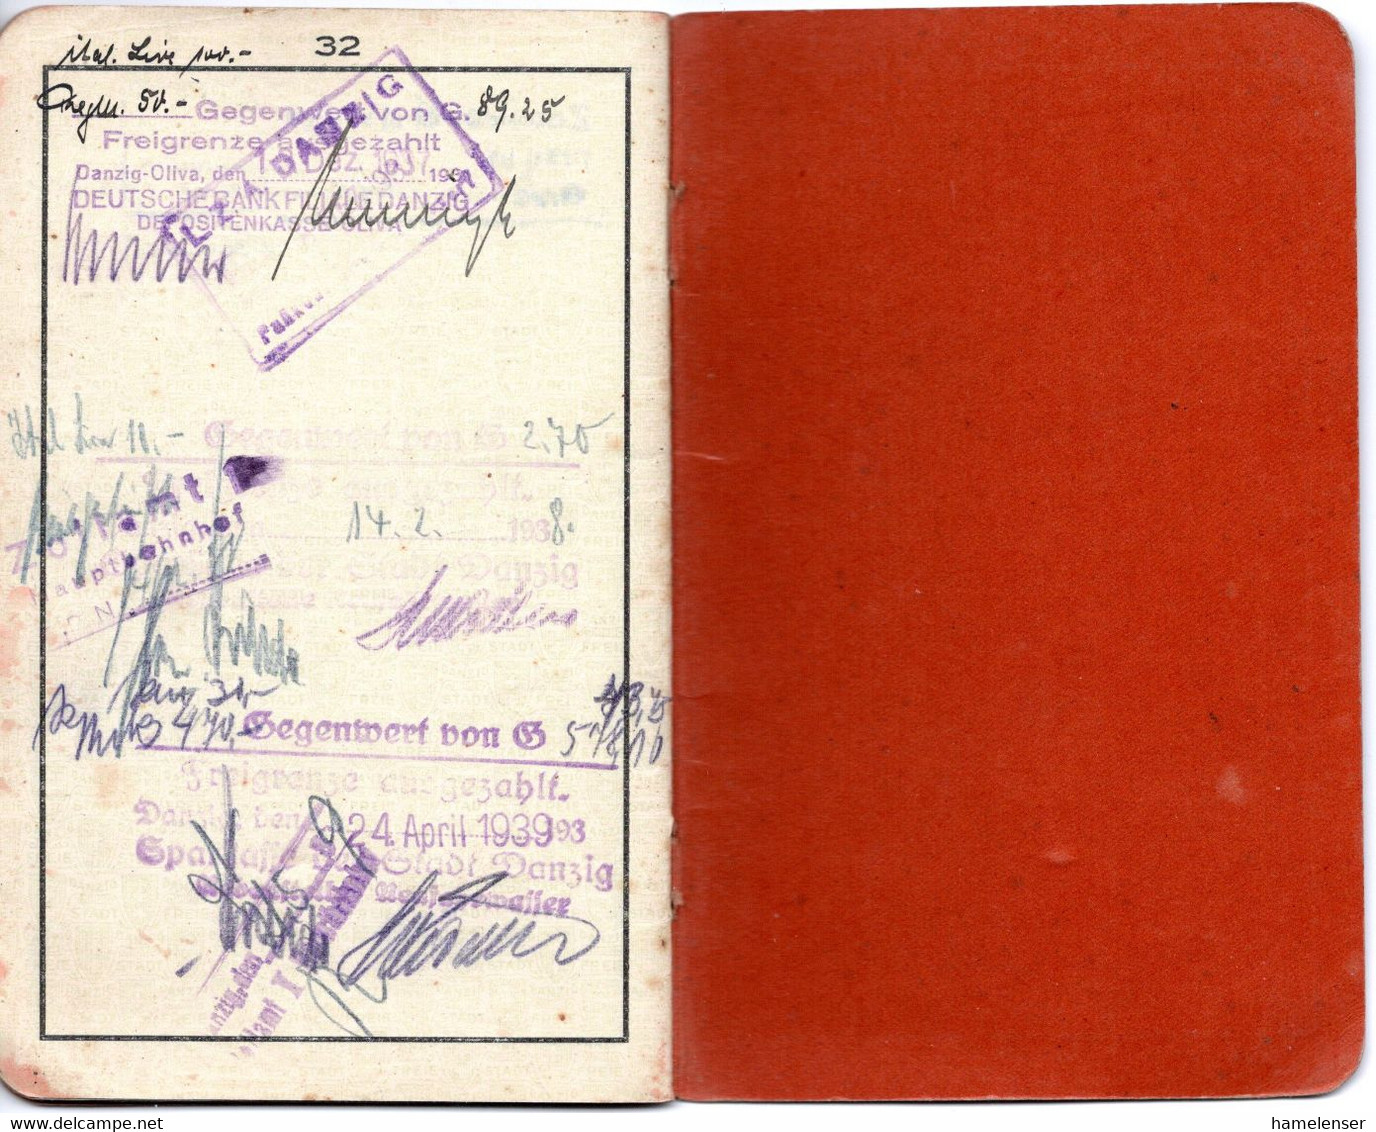 55089 - Danzig - 1936 - Reisepass mit Visa- und Umtauschstempeln zur Olympiade Berlin